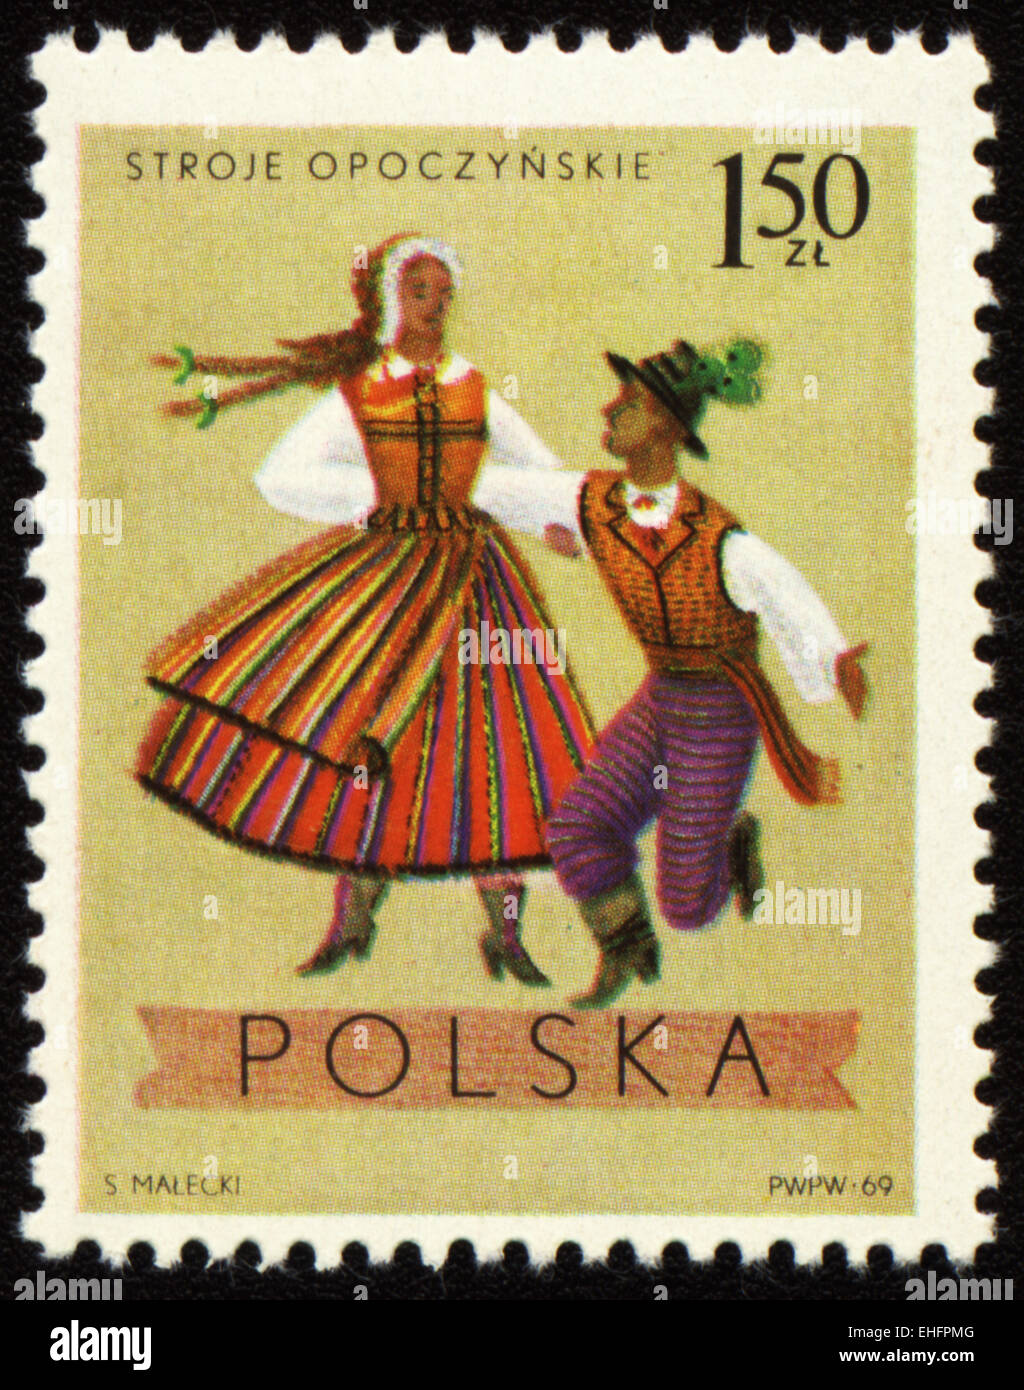 Polen - ca. 1969: Eine Briefmarke gedruckt in Polen zeigt polnischen Volkstänzer in Kostümen aus Opoczynski region Stockfoto